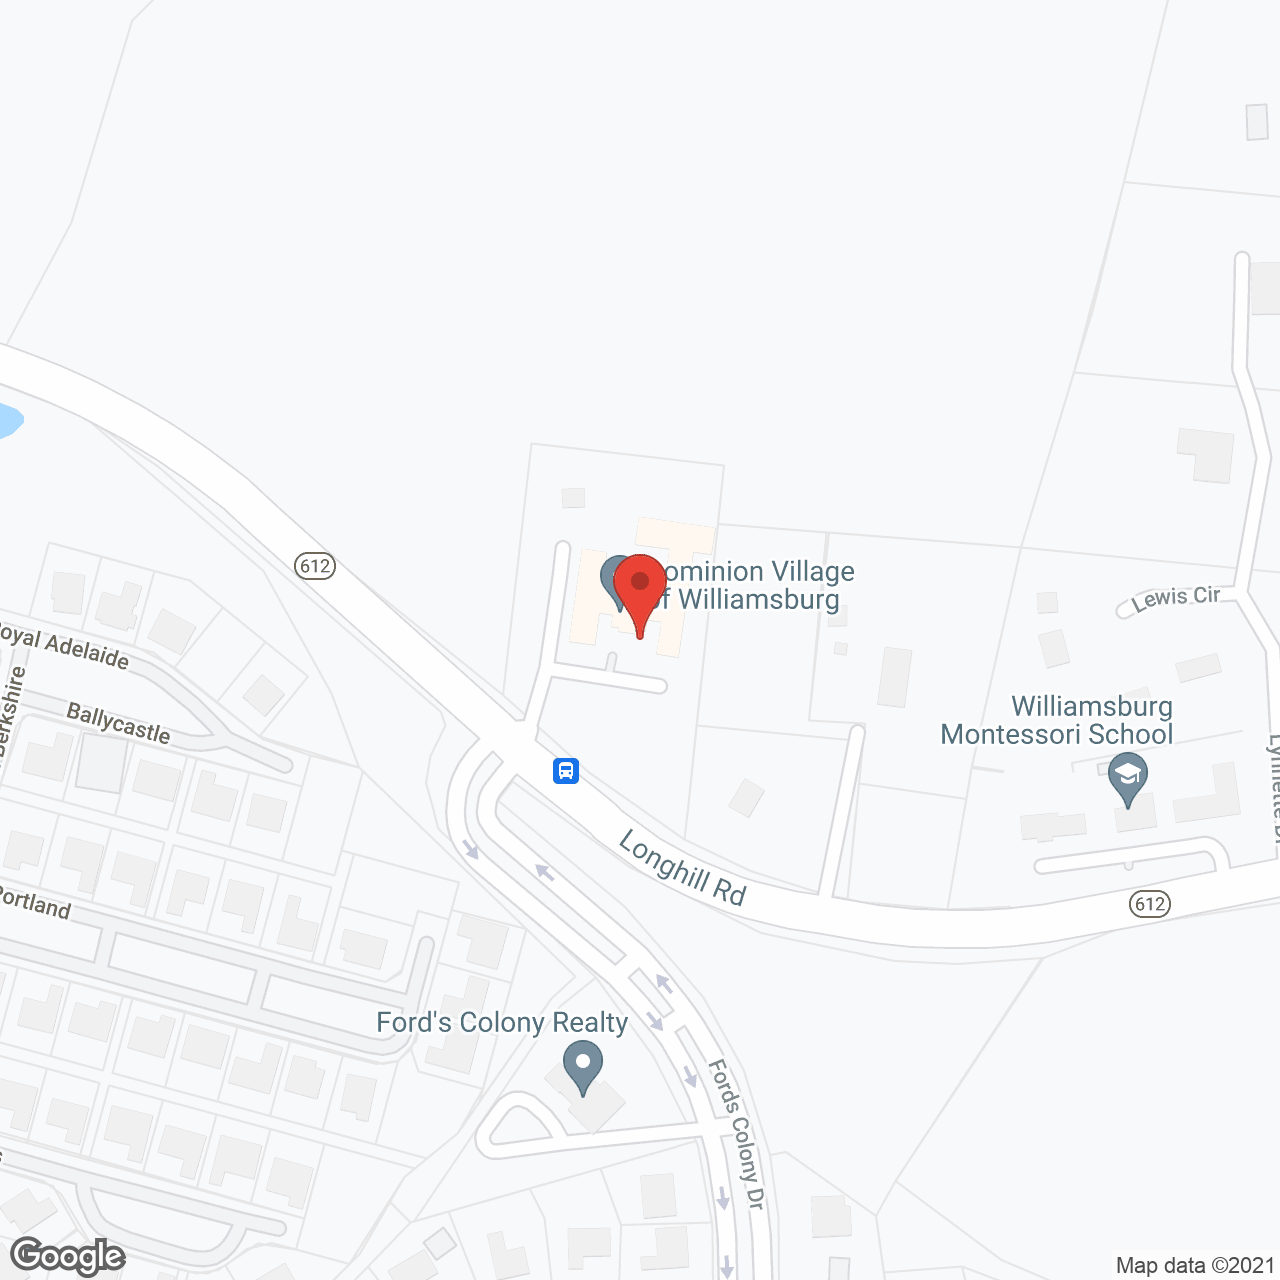 Dominion Village Williamsburg in google map